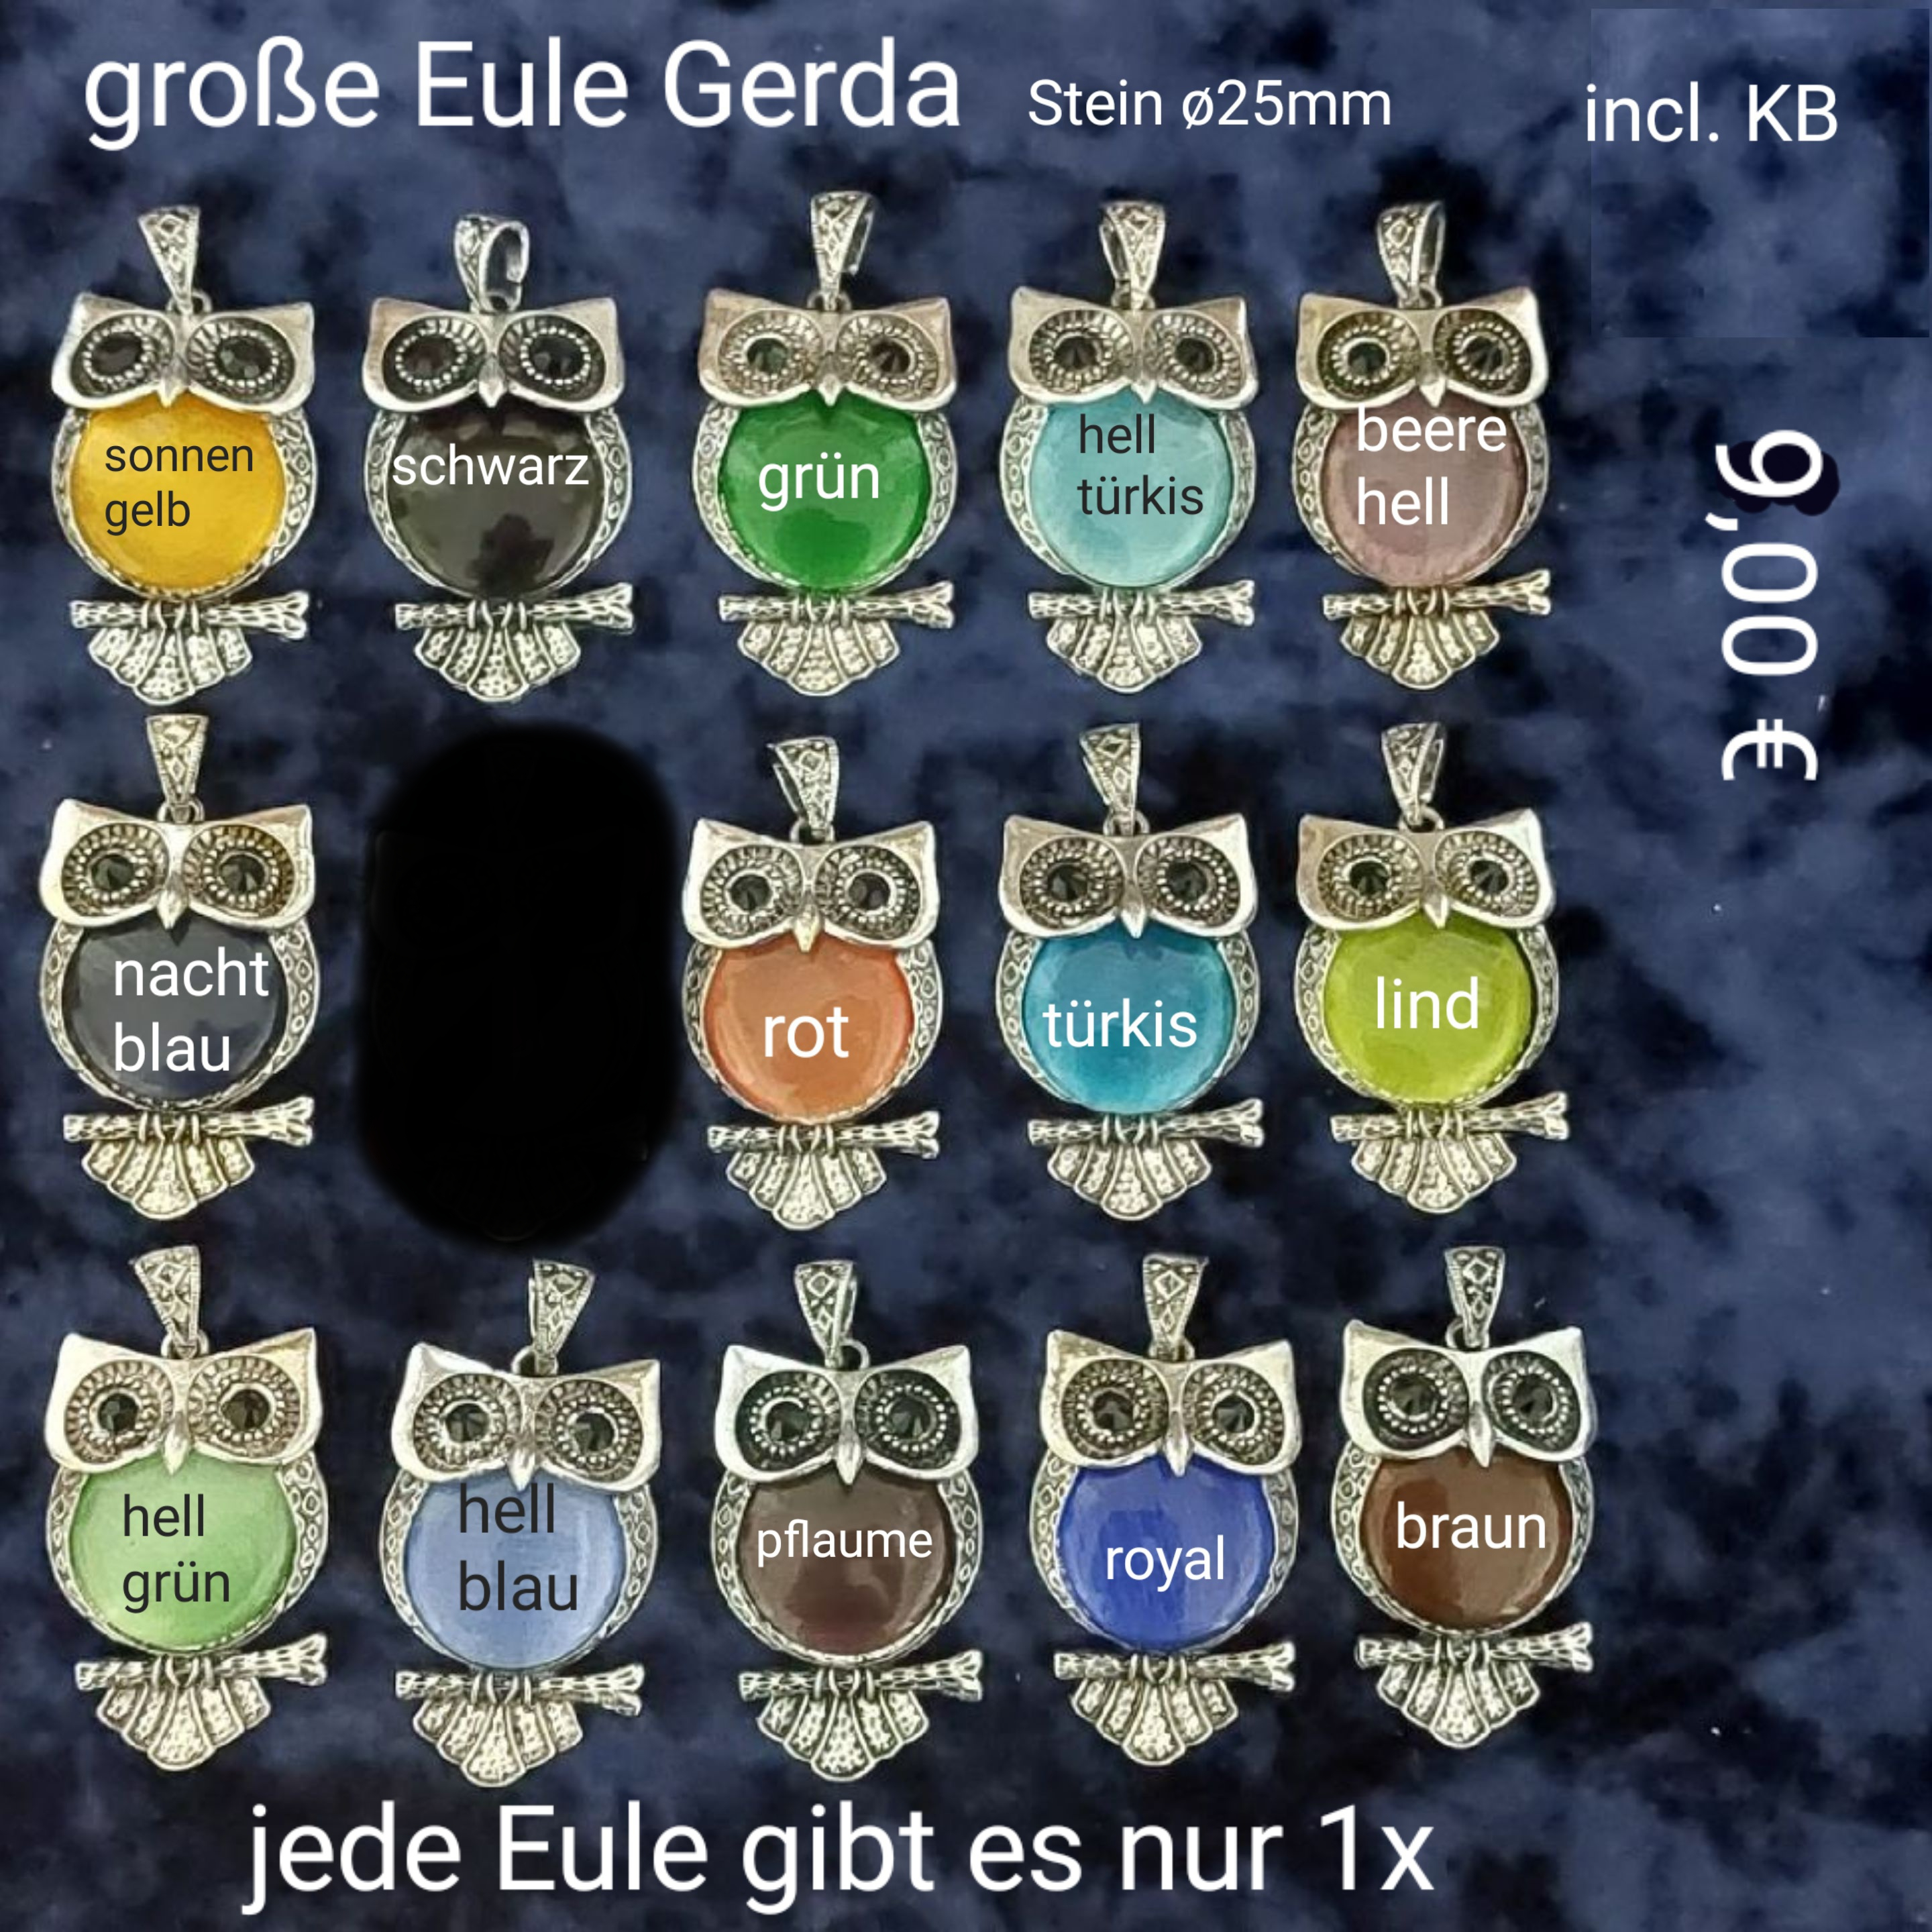 Eule Gerda